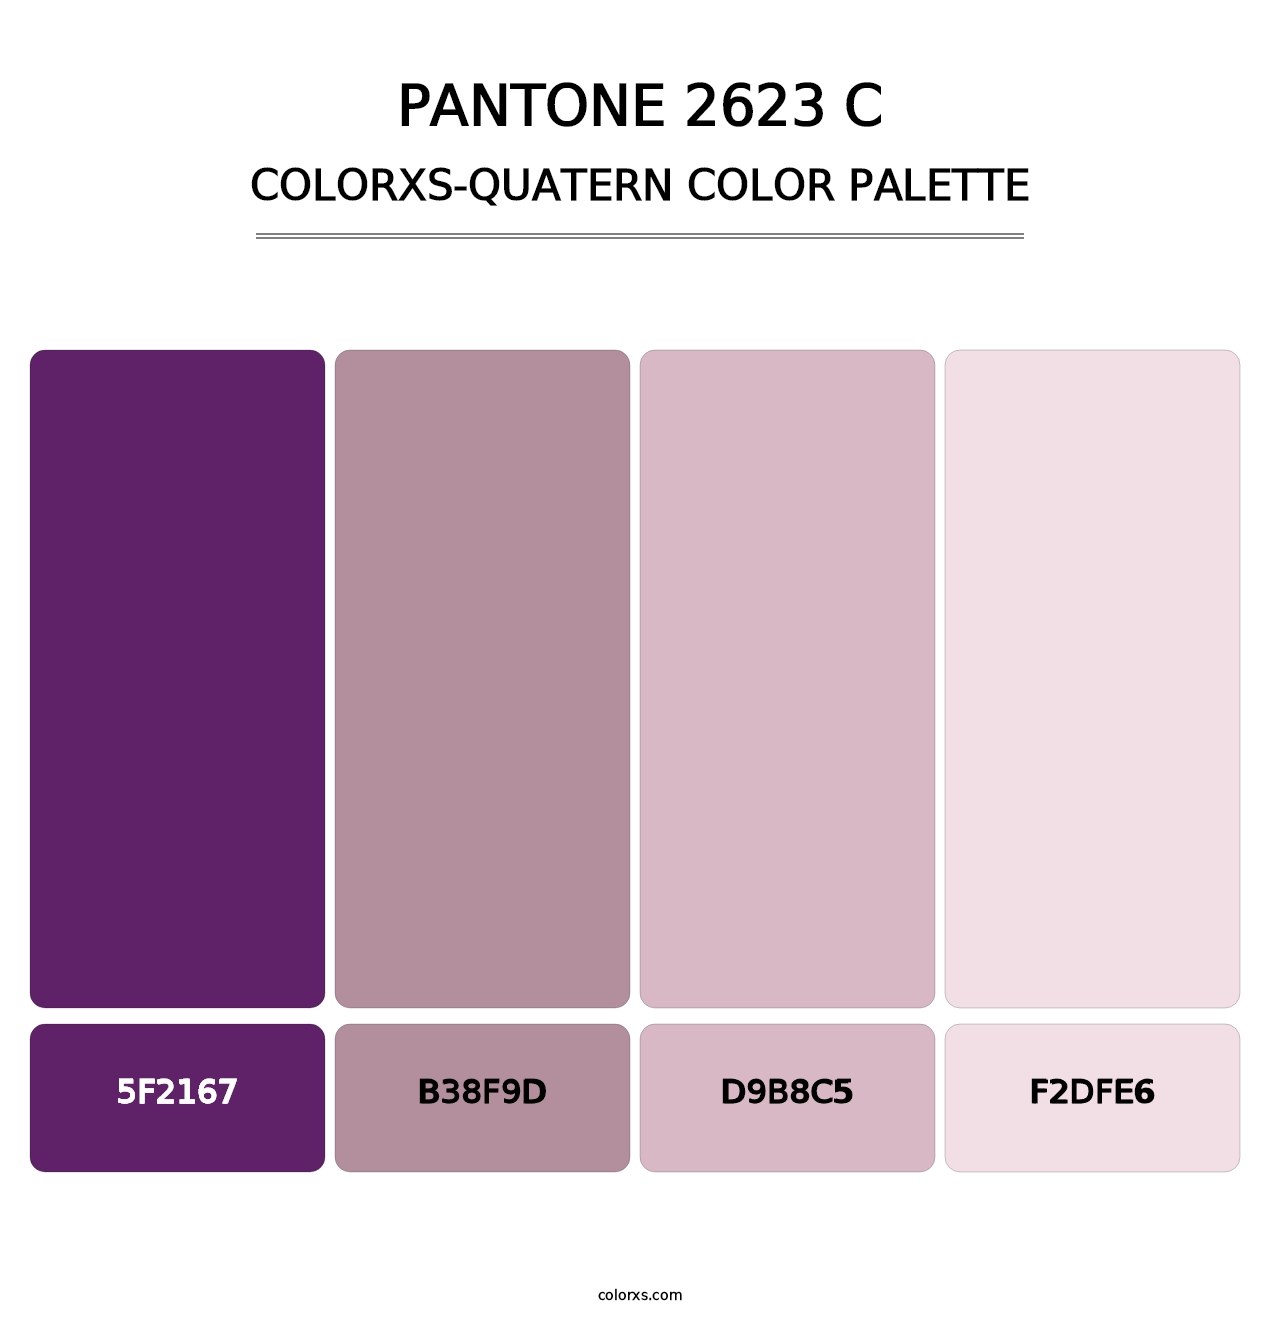 PANTONE 2623 C - Colorxs Quatern Palette